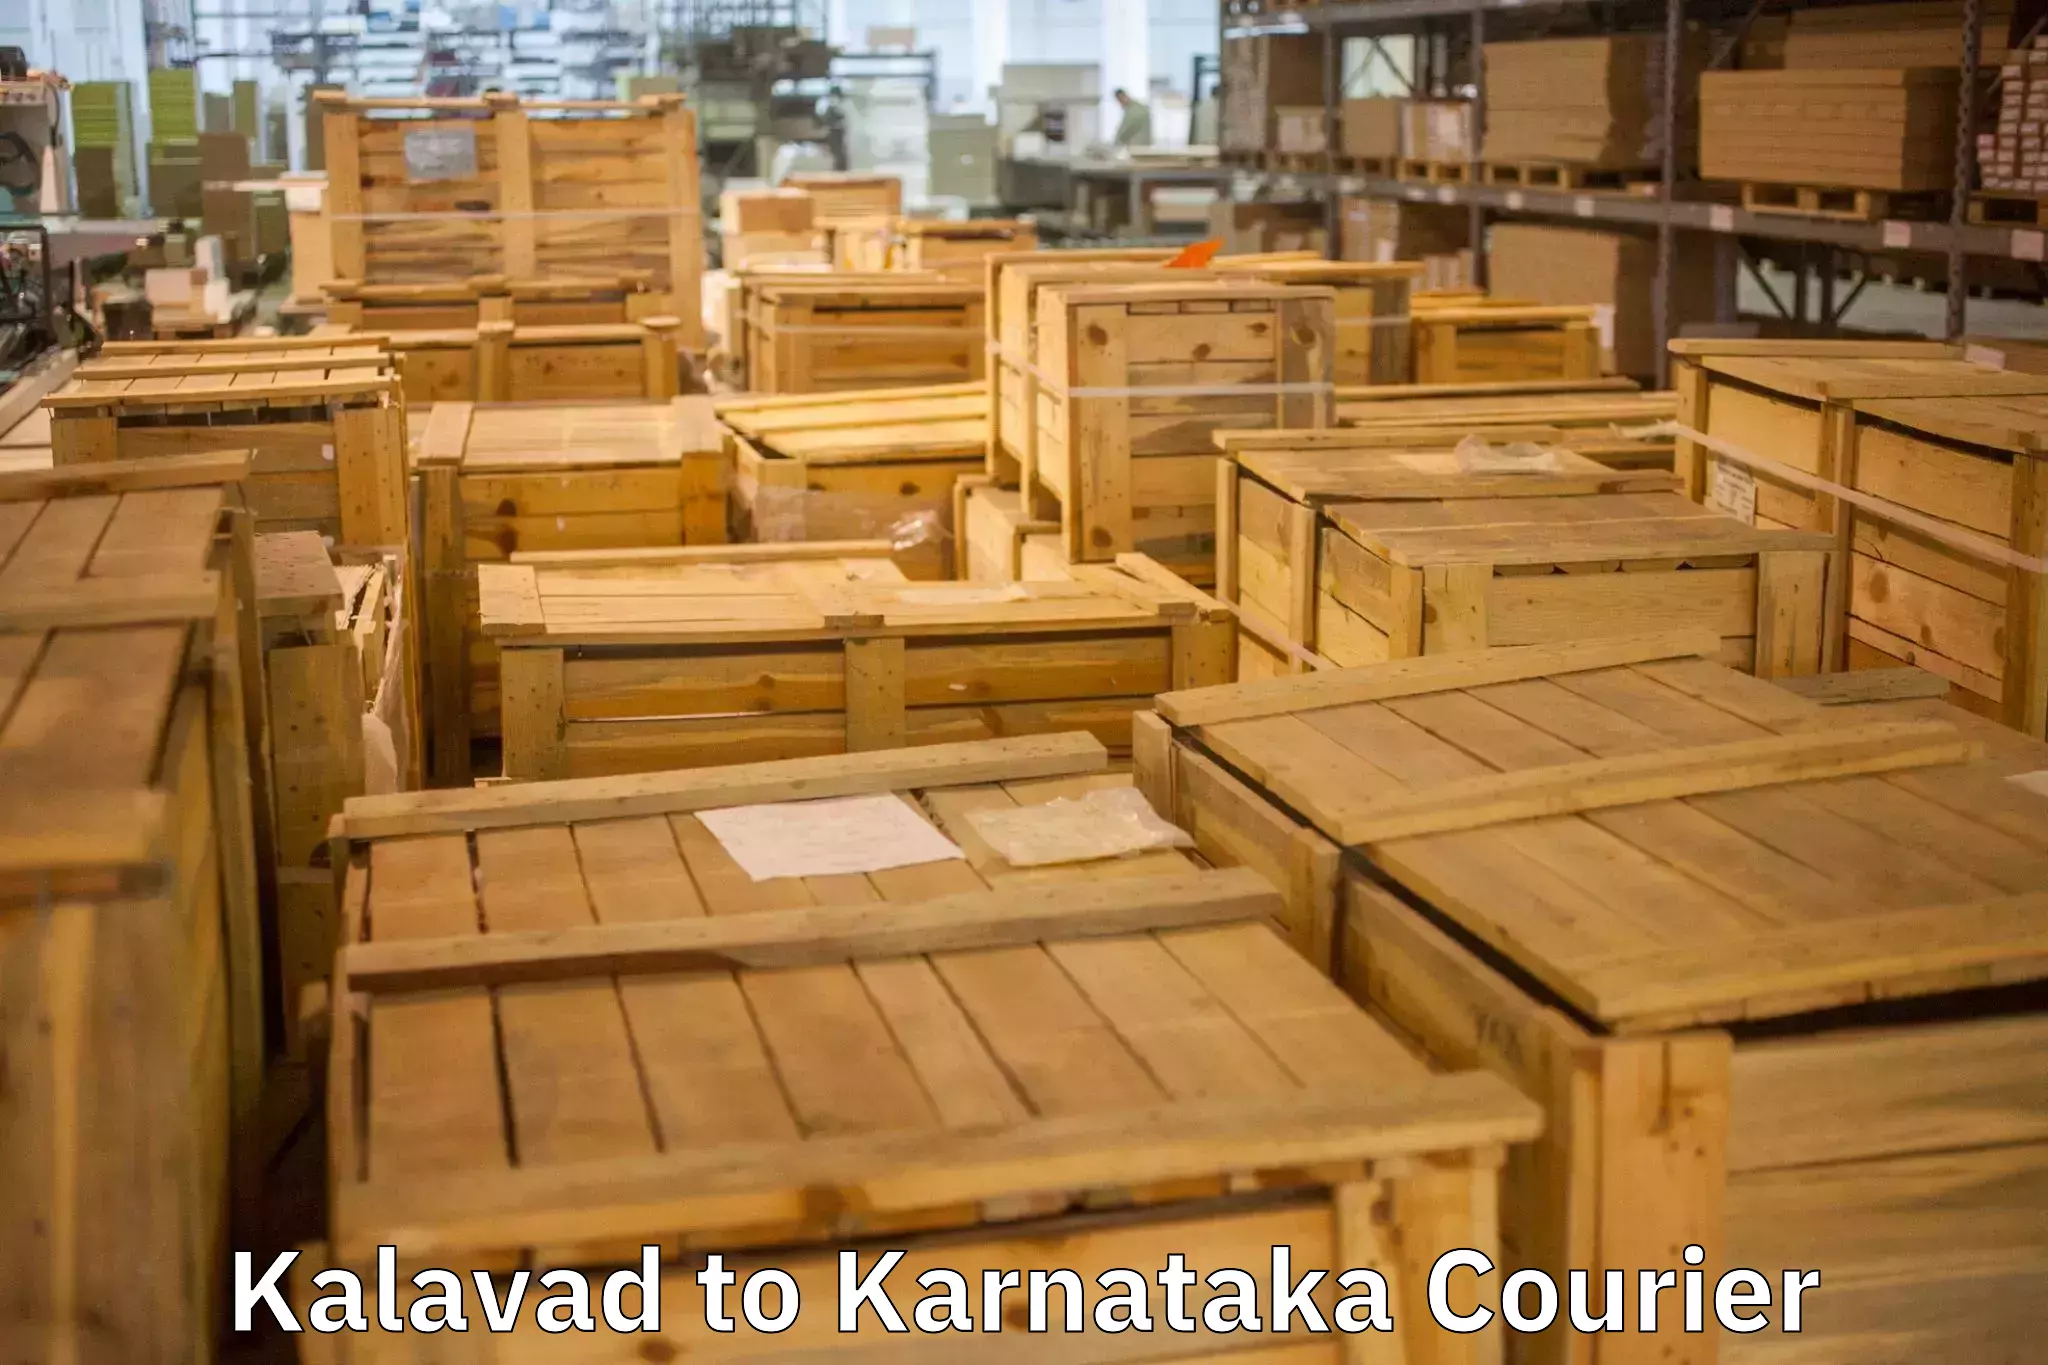 Home moving experts Kalavad to Karnataka